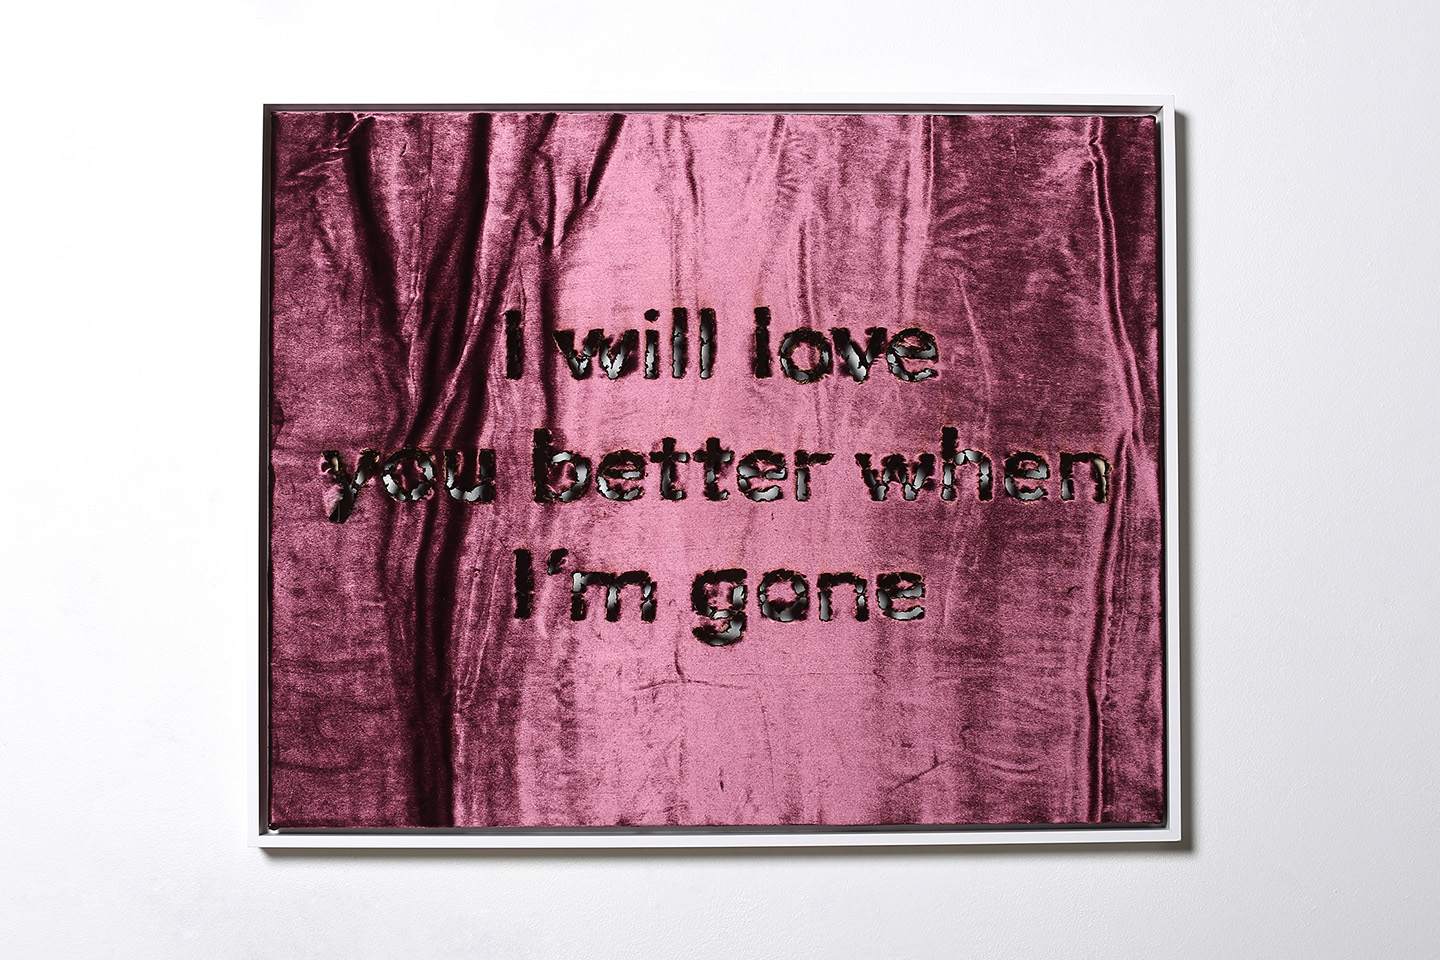   I will love you better when I'm gone  Hand burnt text on silk velvet 30" x 24" 2017 